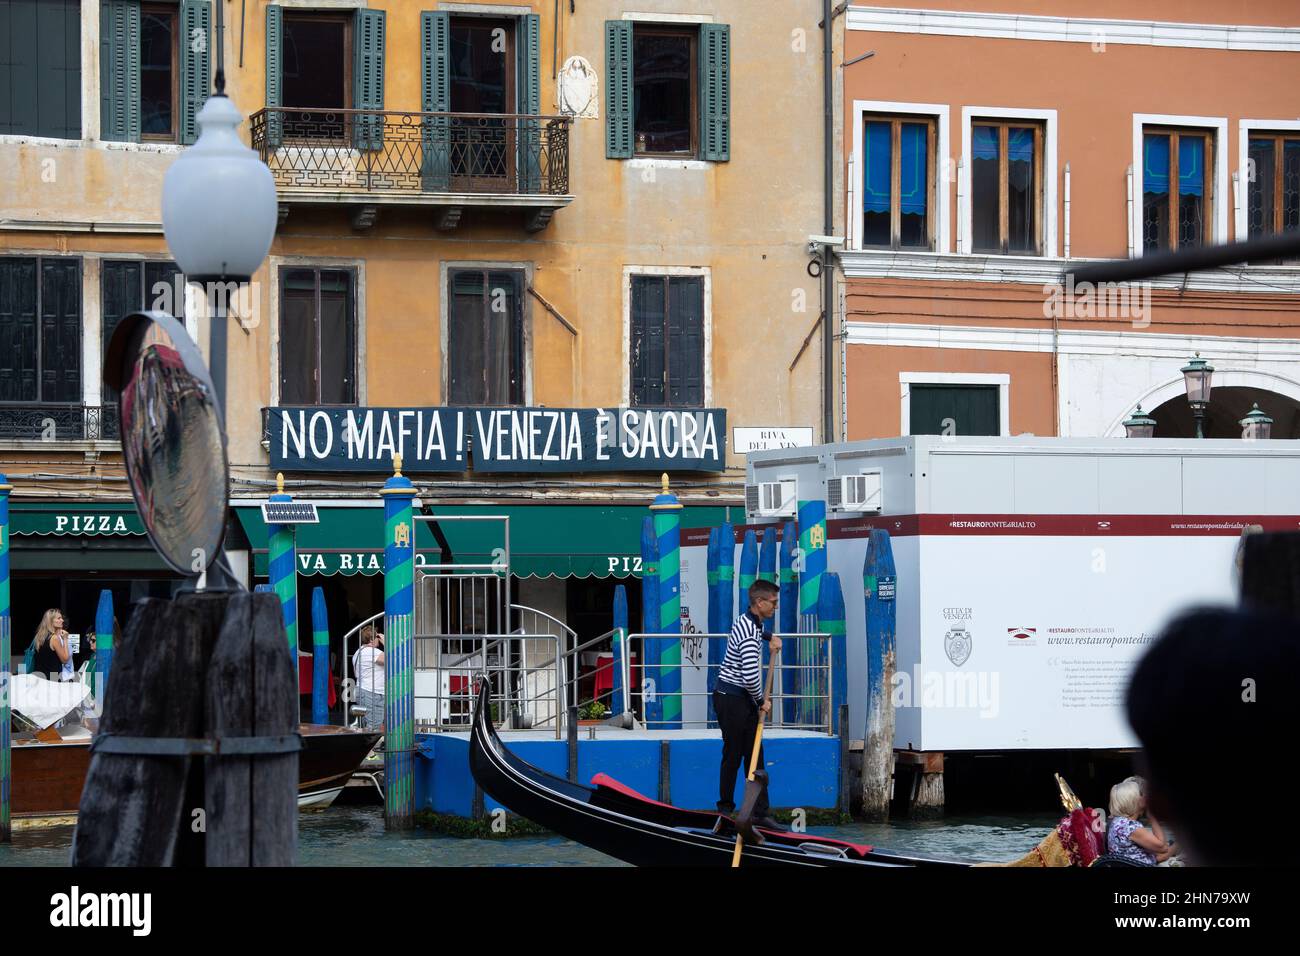 Eine Straßenszene in Venedig mit einem Schild, das etwas Abneigemittel gegen die Mafia zeigt Stockfoto